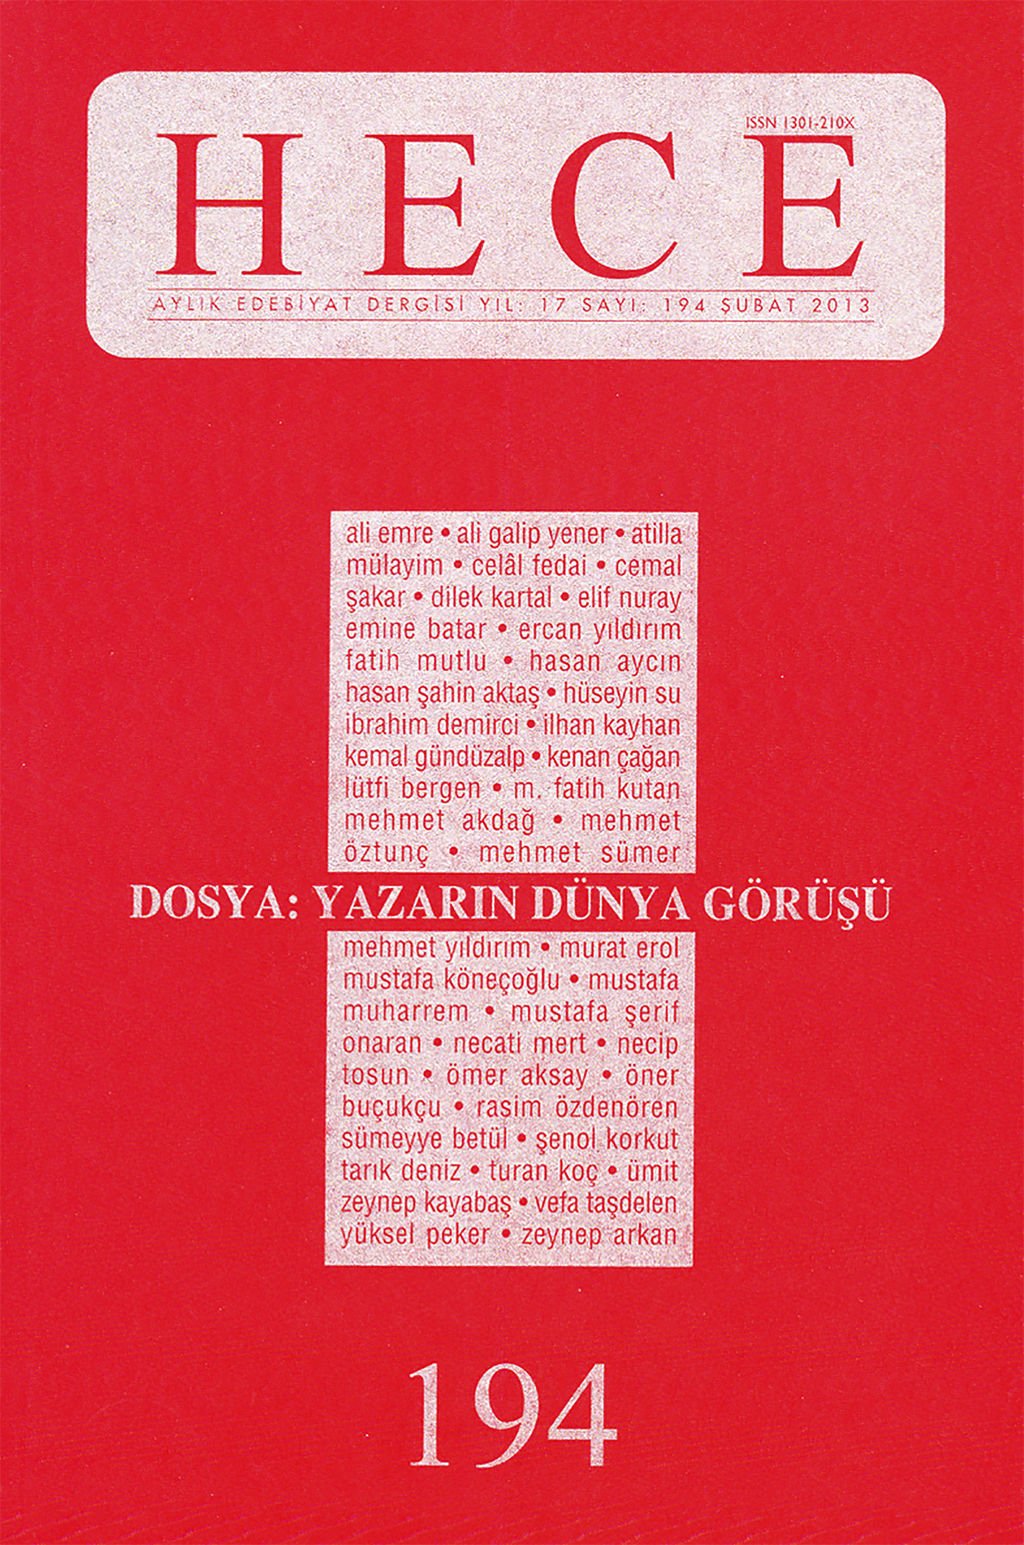 Hece Dergisi 194. Sayı Şubat 2013